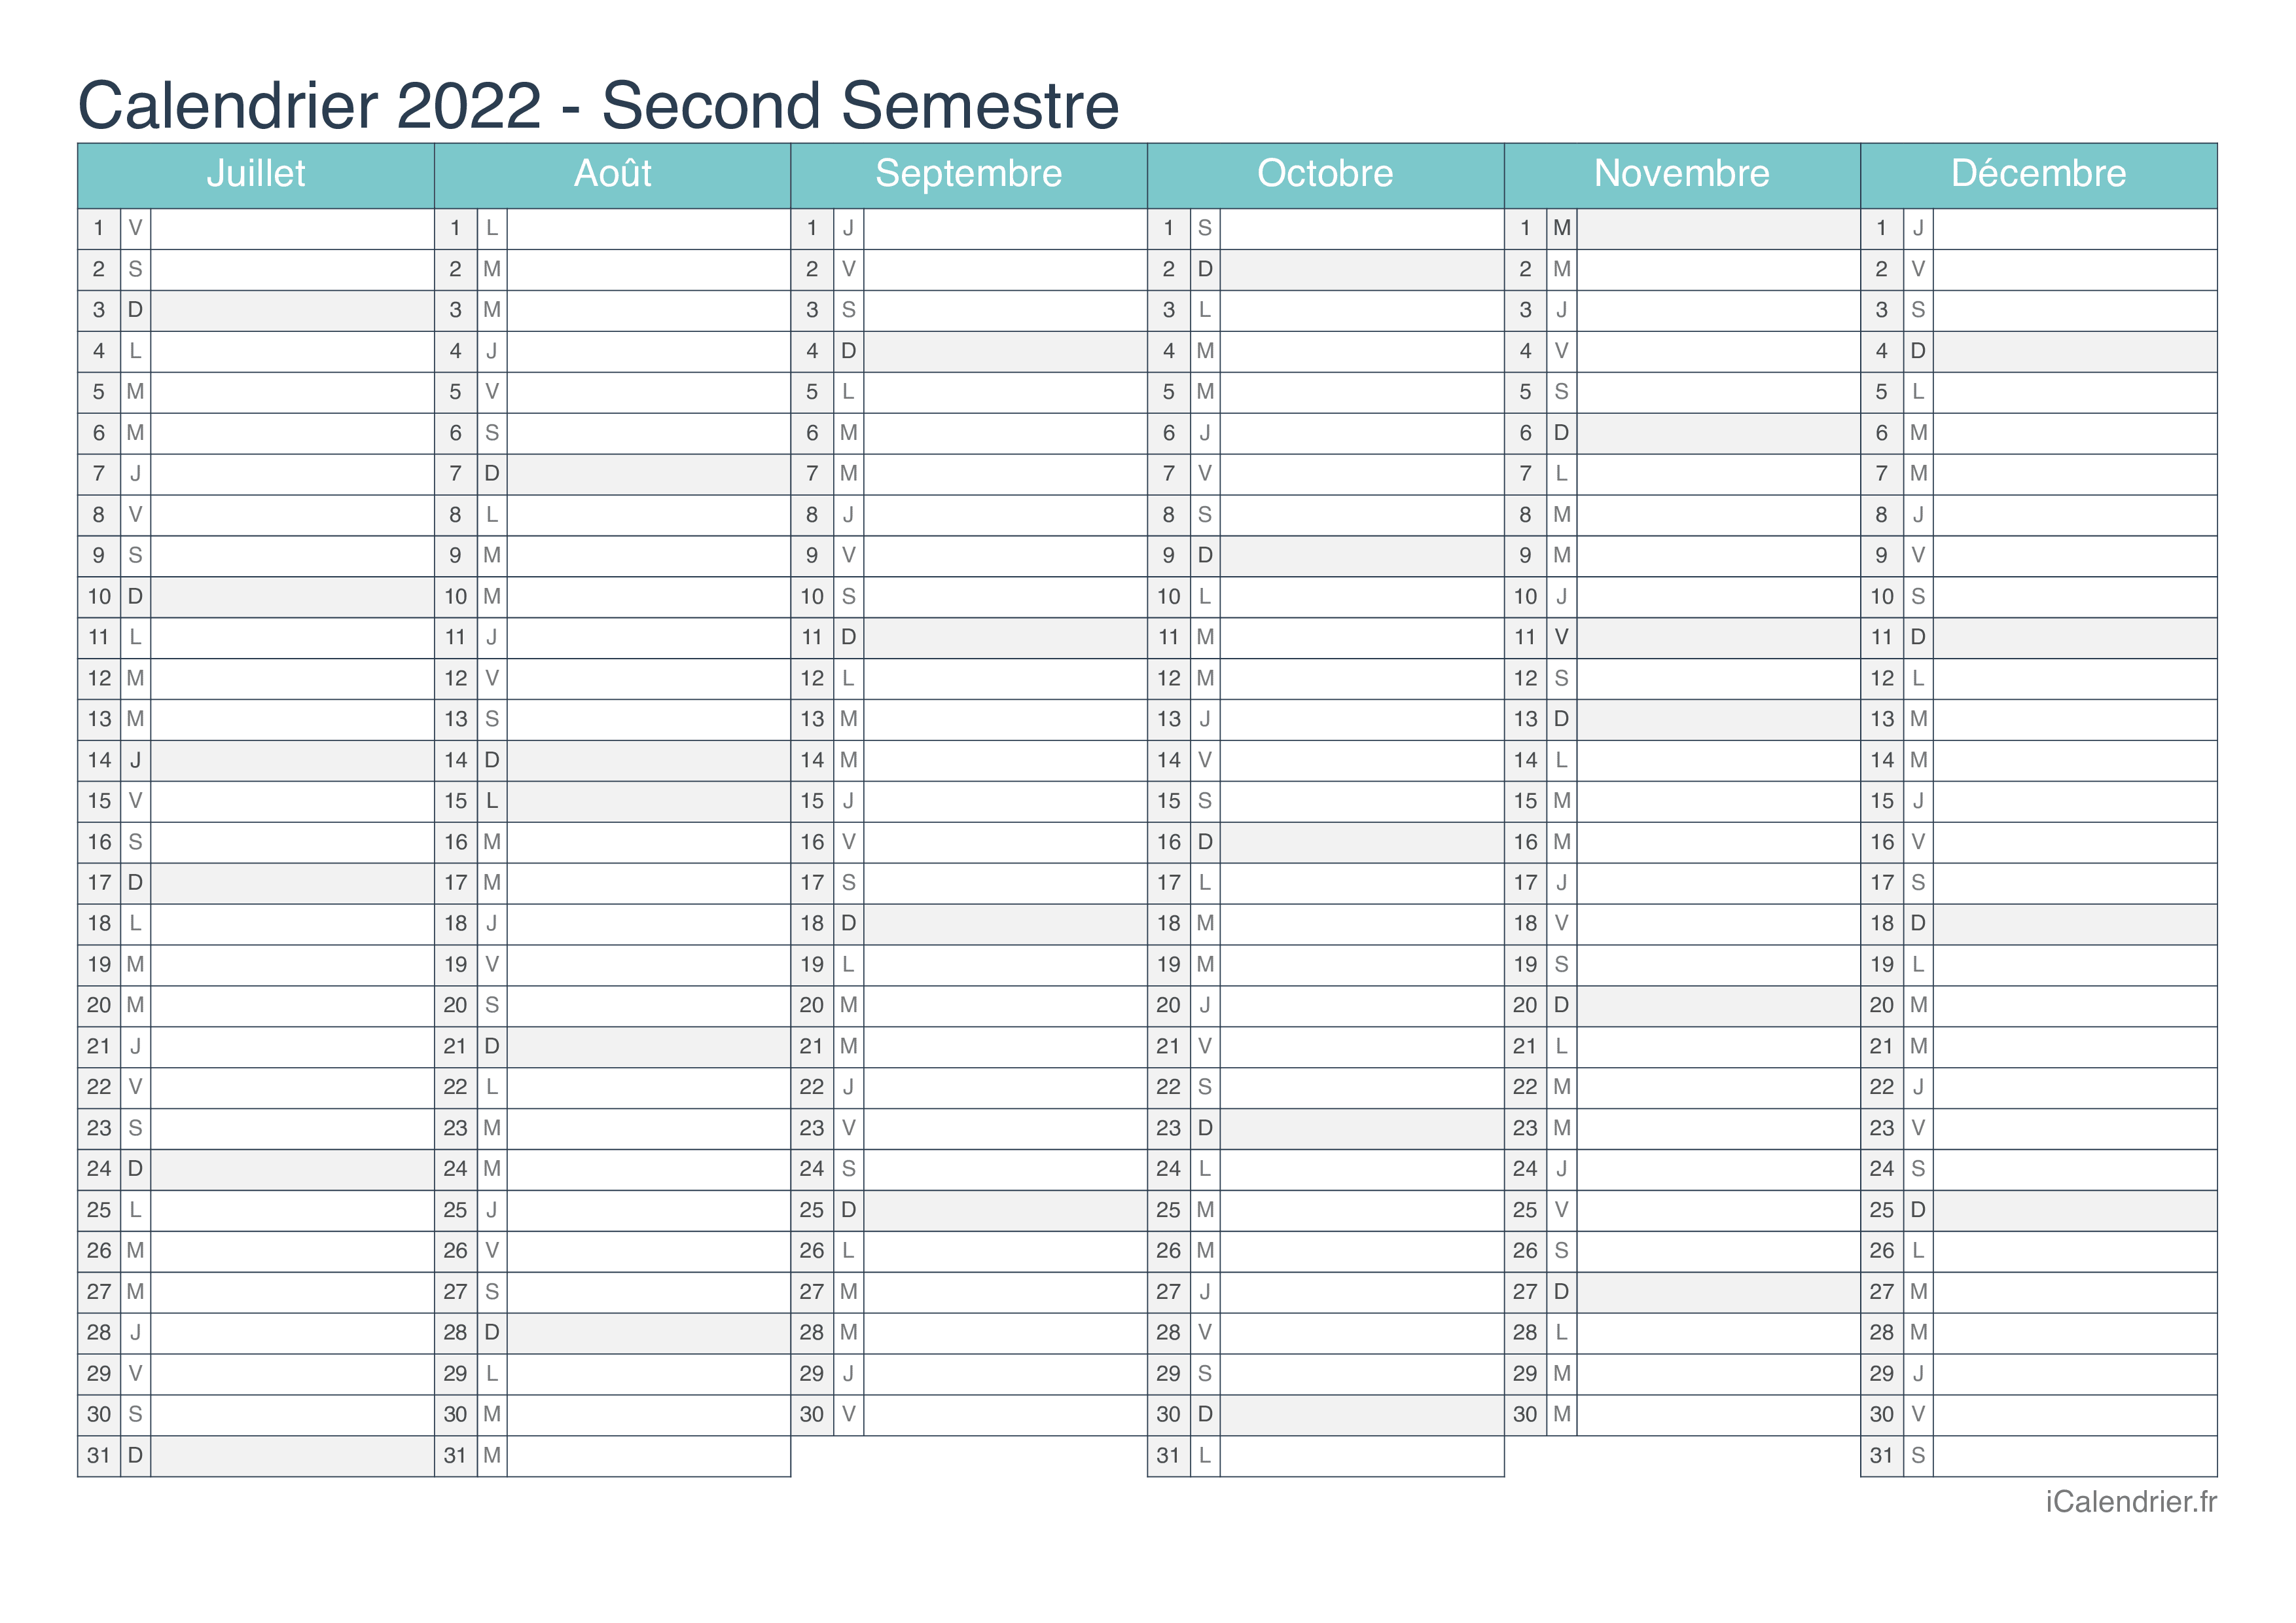 Calendrier 2022 Excel à Télécharger Calendrier 2022 à imprimer PDF et Excel   iCalendrier